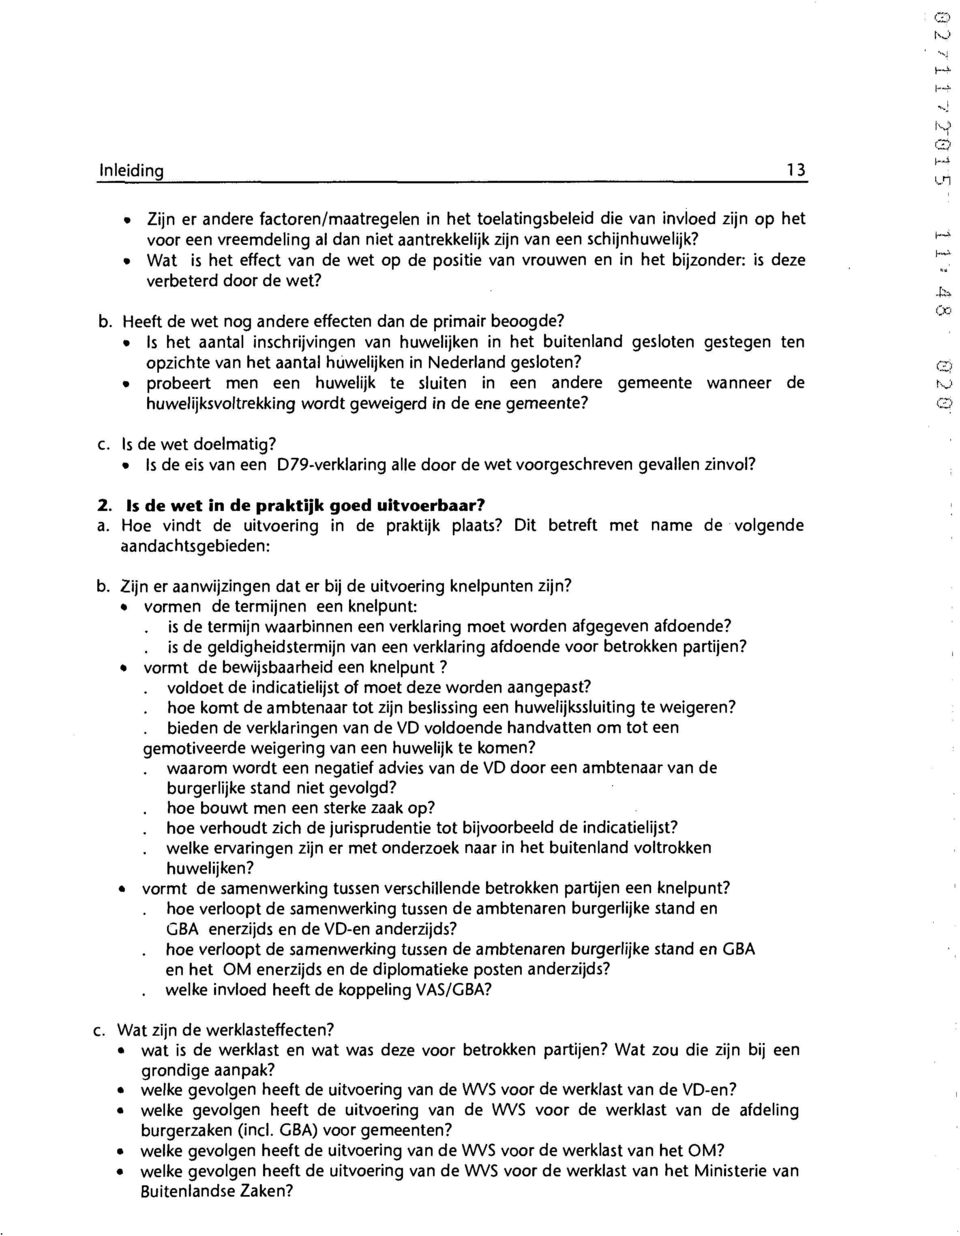 Is het aantal inschrijvingen van huwelijken in het buitenland gesloten gestegen ten opzichte van het aantal huwelijken in Nederland gesloten?